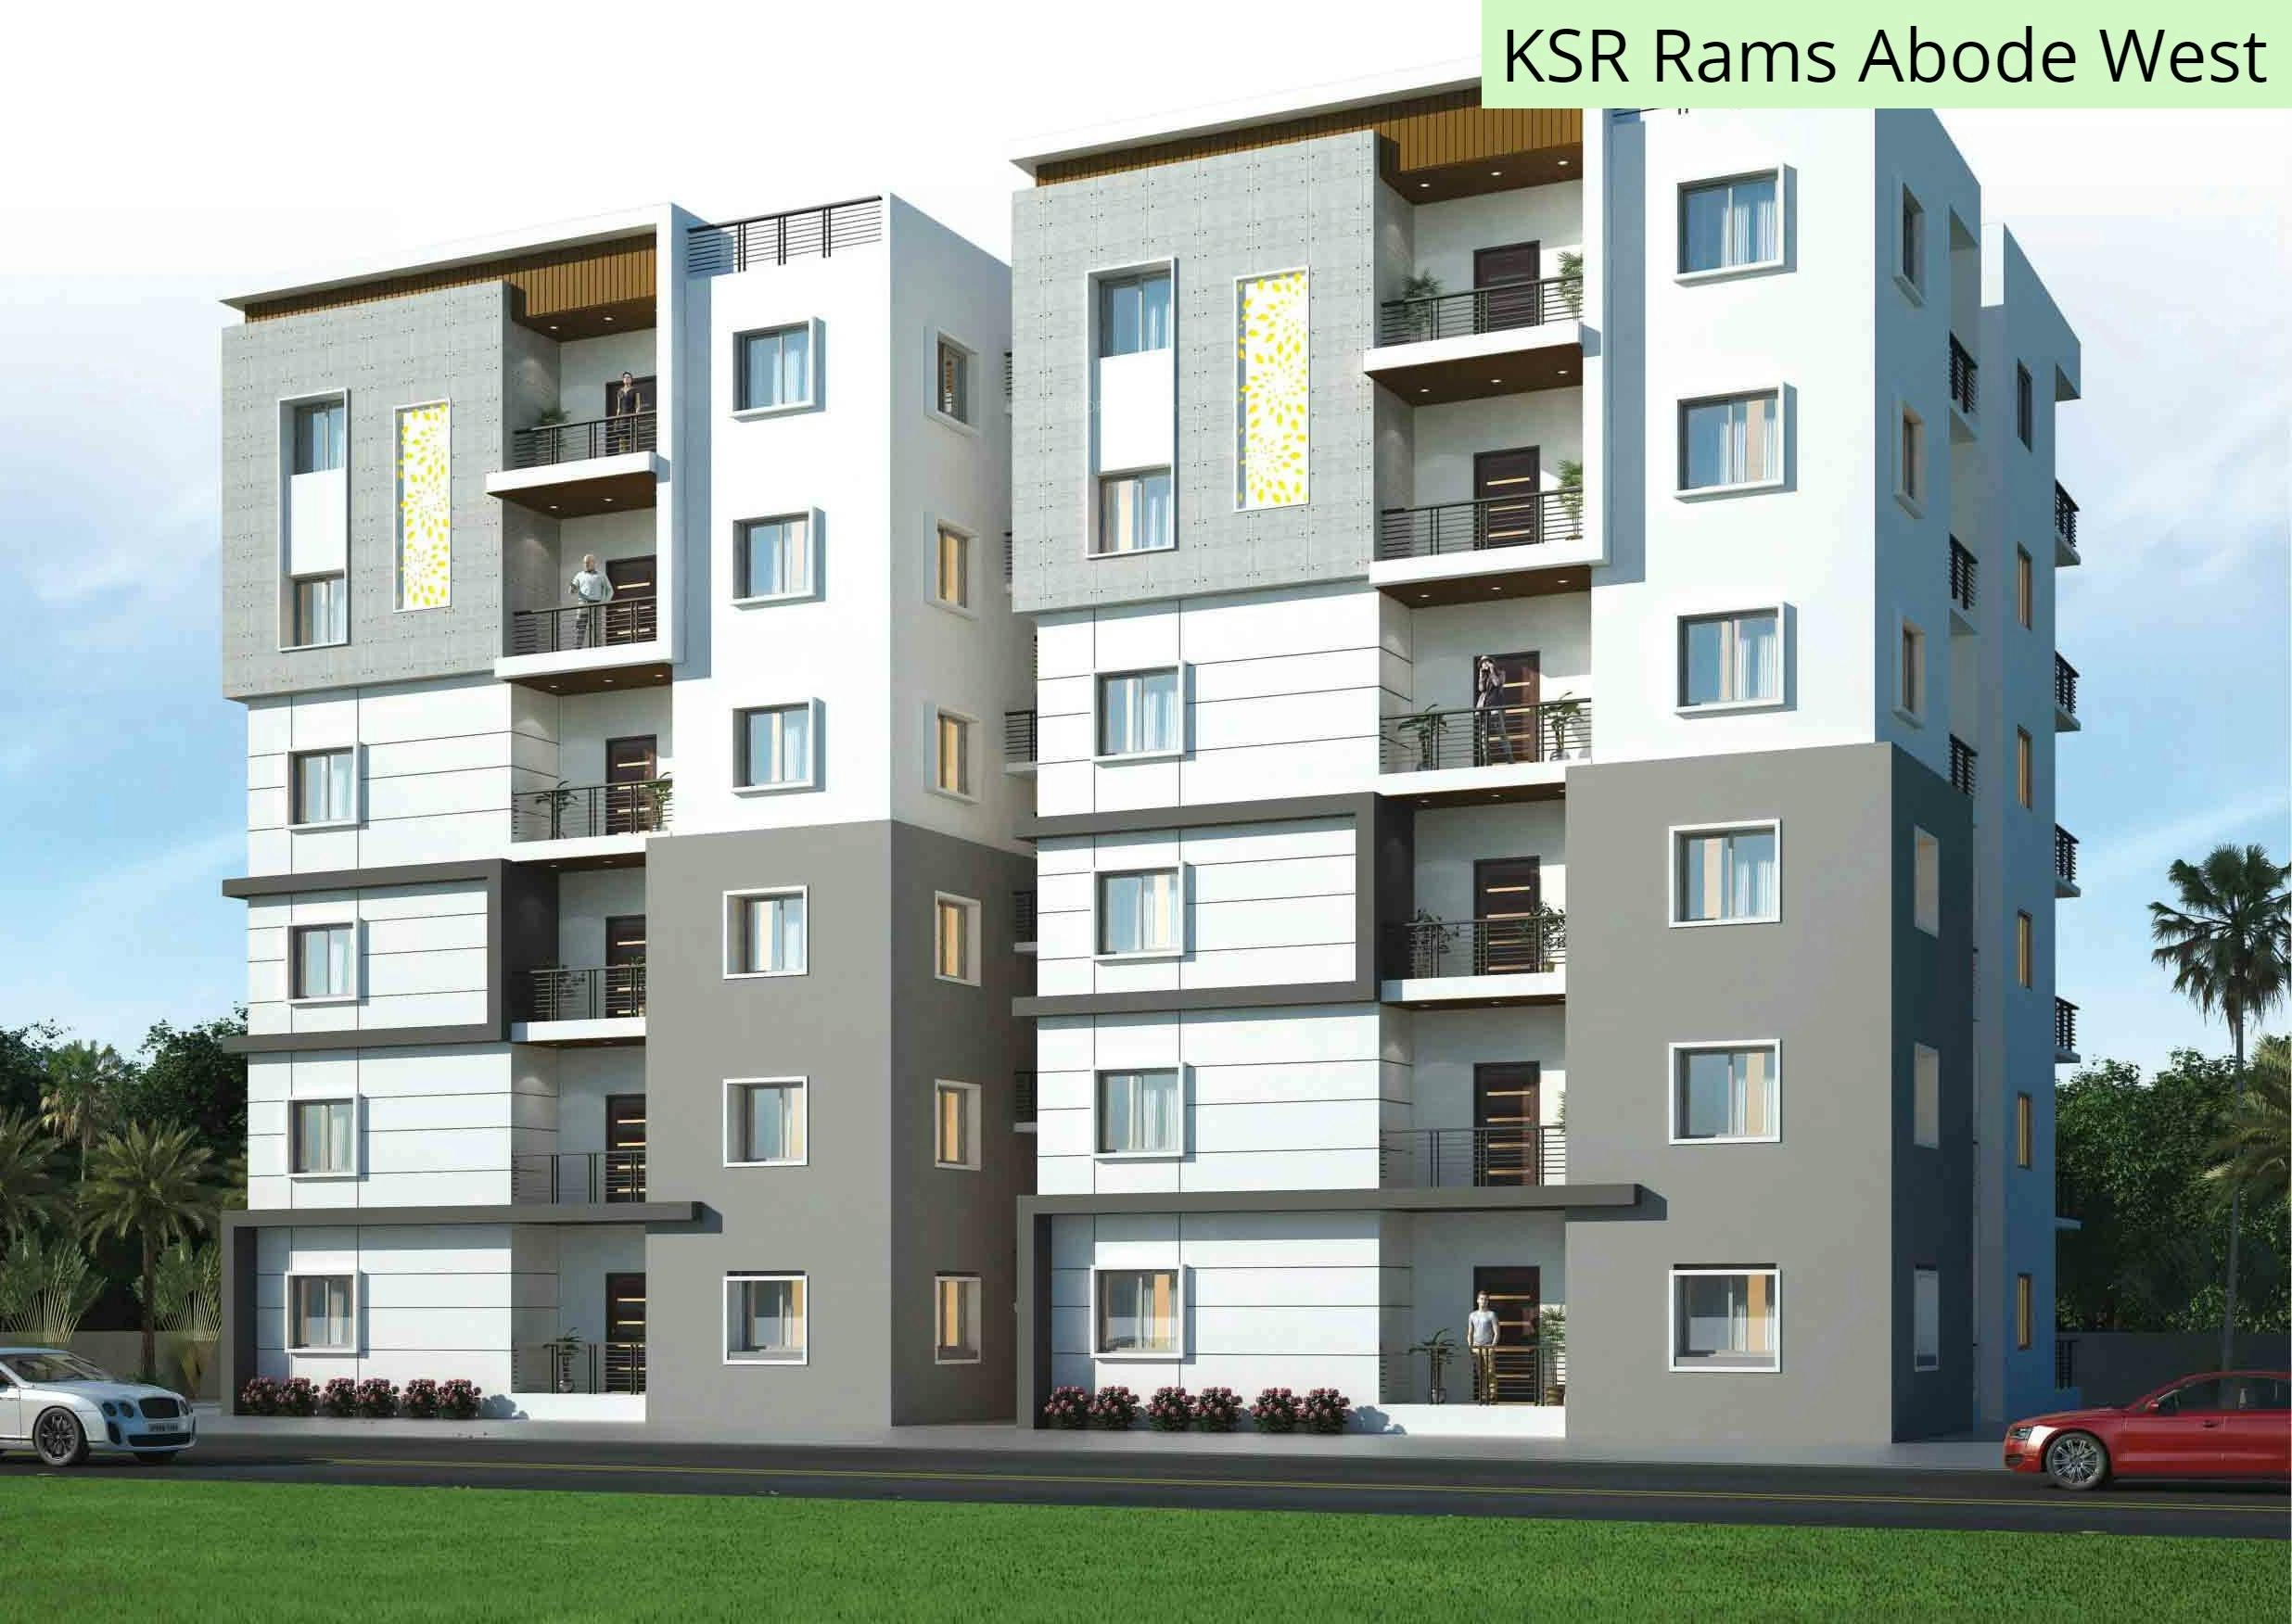 Floor plan for KSR Rams Abode West